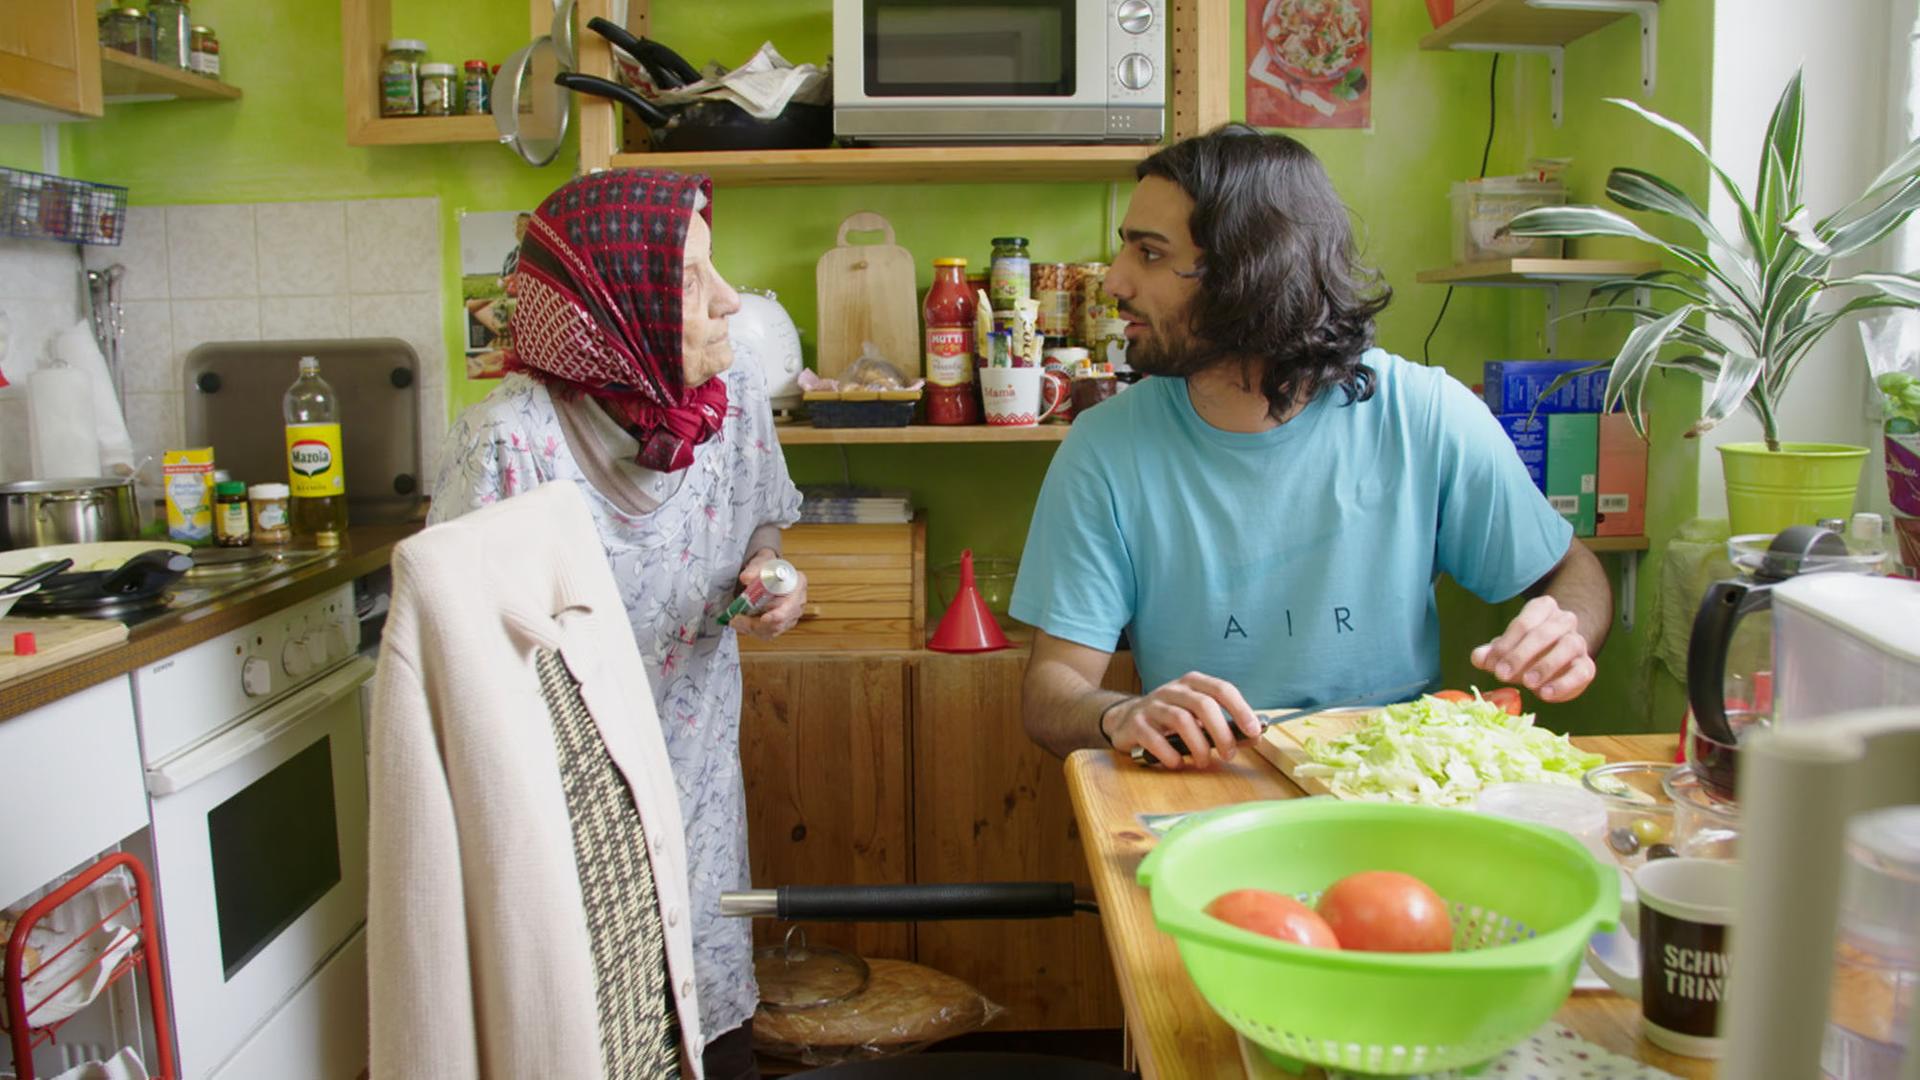 Szene aus der Generationen-Langzeitbeobachtung "20-40-60: Unser Leben!" des ZDF: Der 20-jährige Ehsan ist mit seiner 93-jährigen Großmutter, mit der er gemeinsam in einer Wohnung lebt, in der Küche zu sehen.